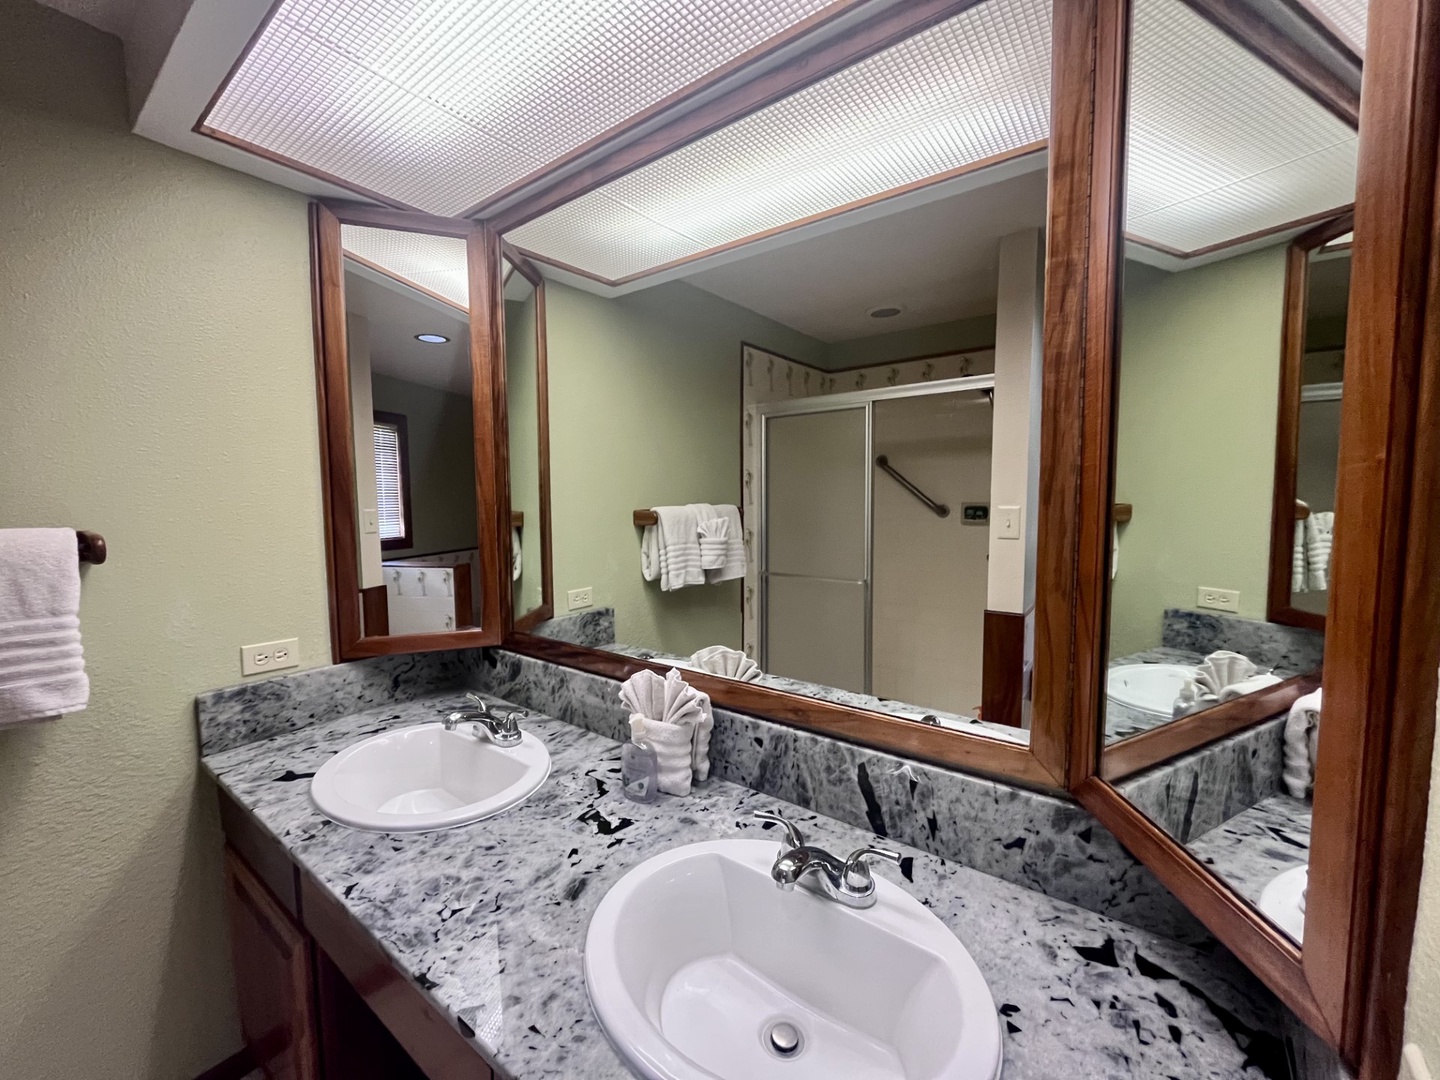 Guest bathroom vanity